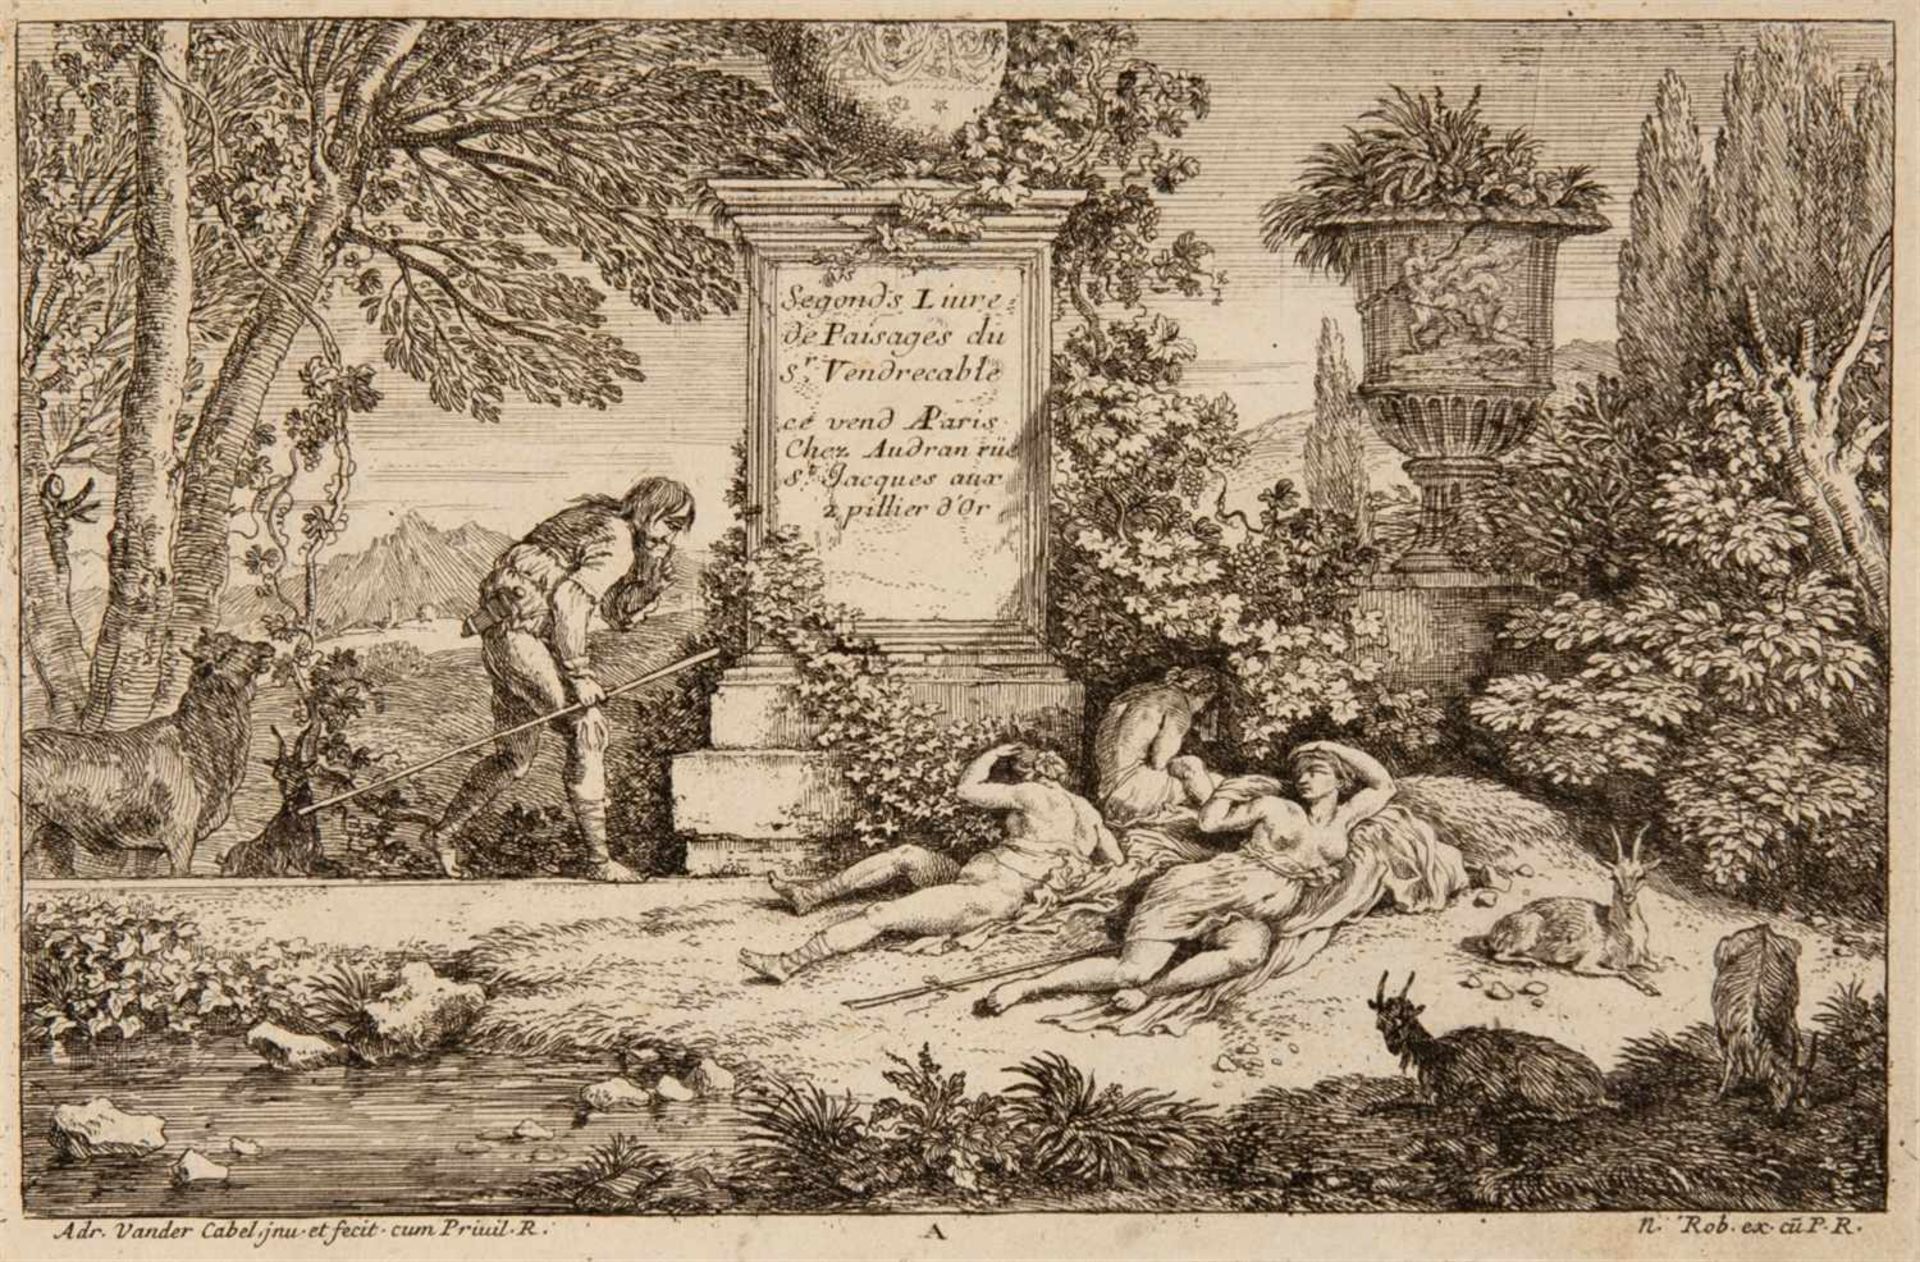 ADRIAN VAN DER CABELRyswyk 1631 - 1705 Lyon Segonds Livre de Paisages du Sr. Vendrecable. Folge